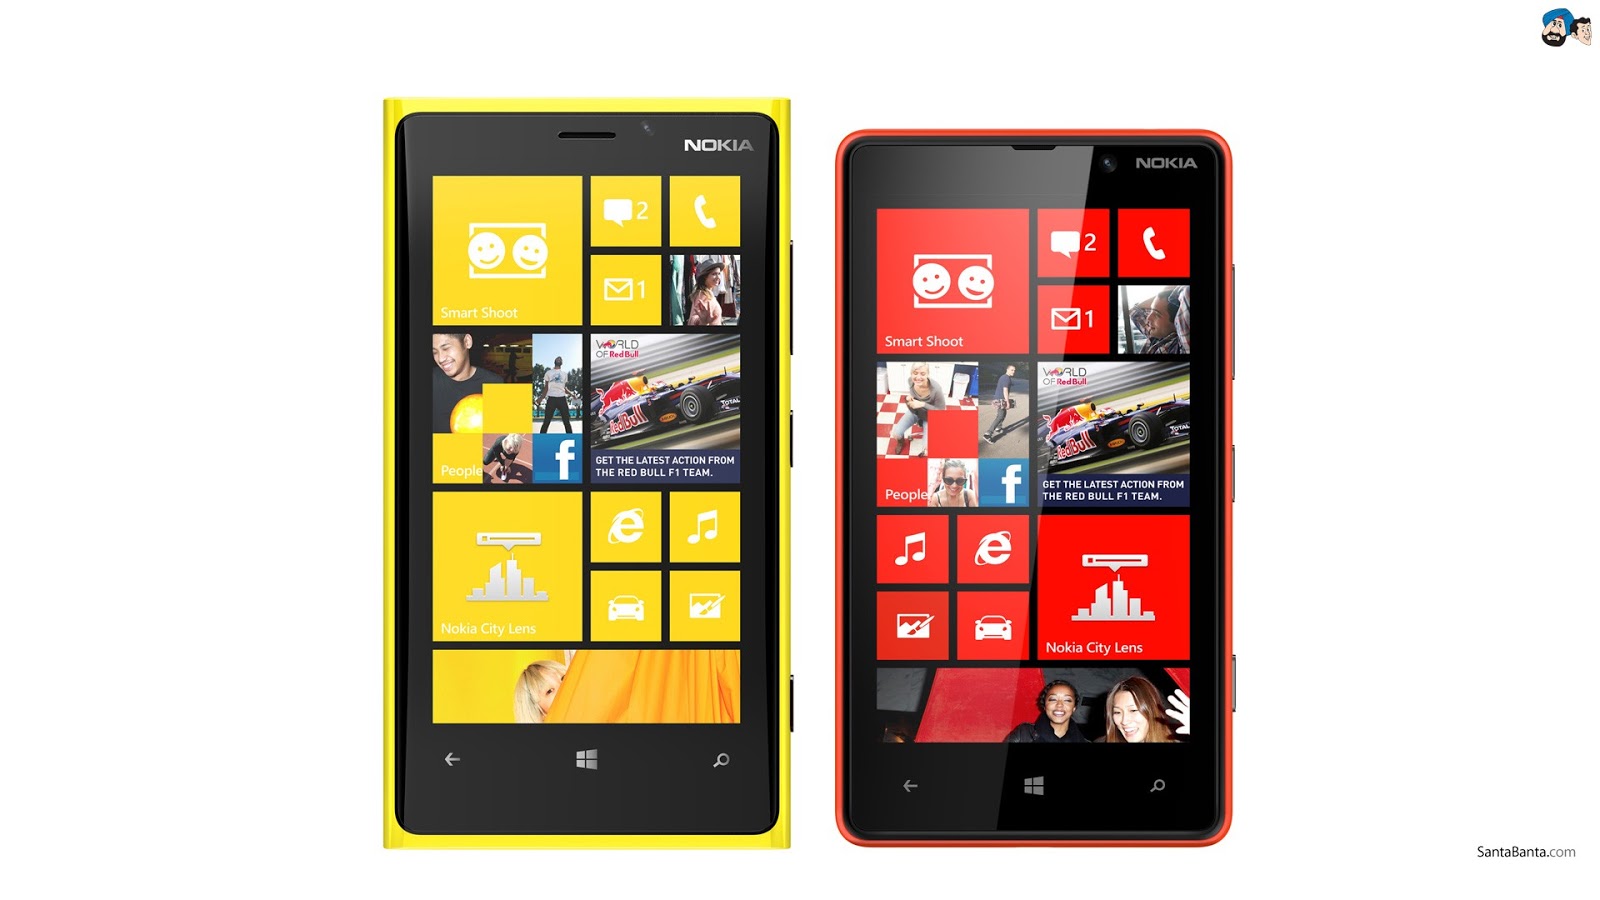 Hình ảnh Nokia Lumia sẽ khiến bạn phải ngạc nhiên về độ phong phú của nó. Những tính năng đáng kinh ngạc đã được bao gồm trong thiết kế tinh tế này. Hãy cùng khám phá và thưởng thức những chi tiết tuyệt đẹp của nó.